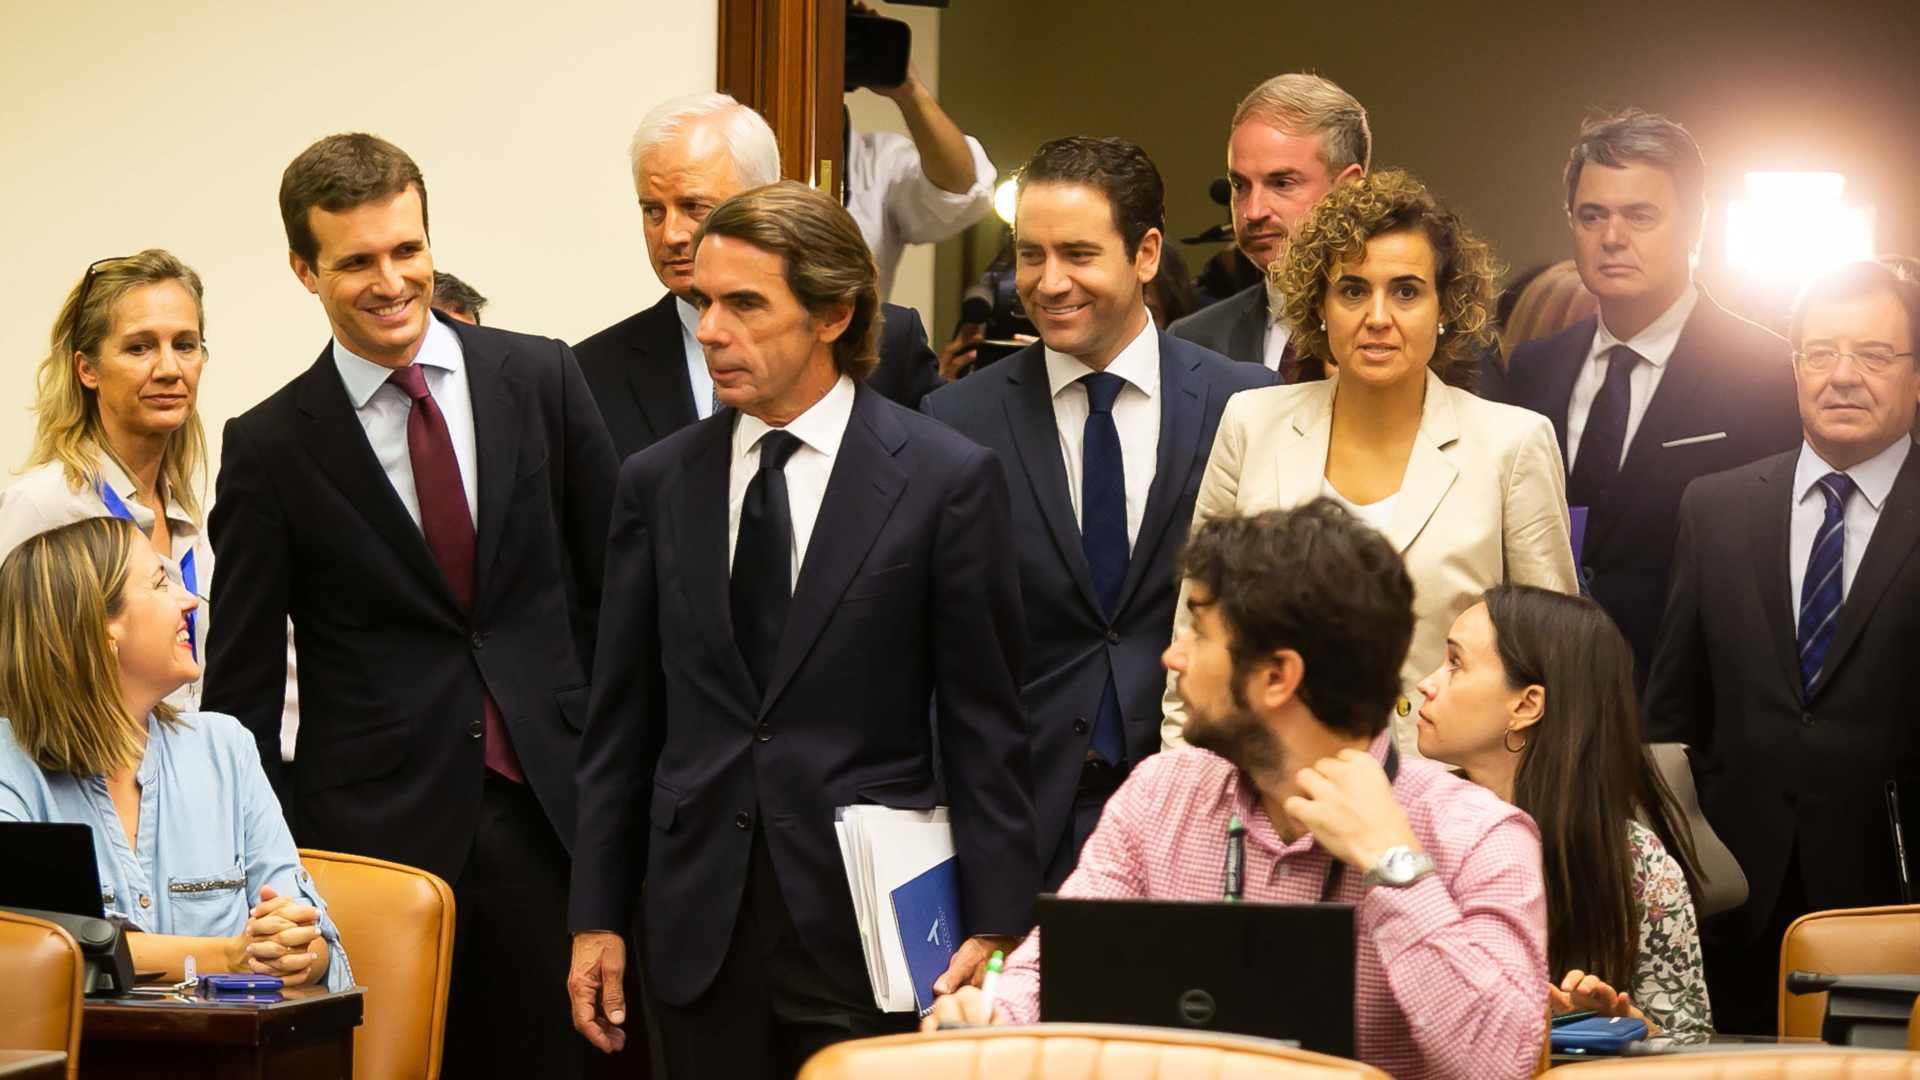 Cruce de descalificaciones entre Aznar y varios diputados en el Congreso